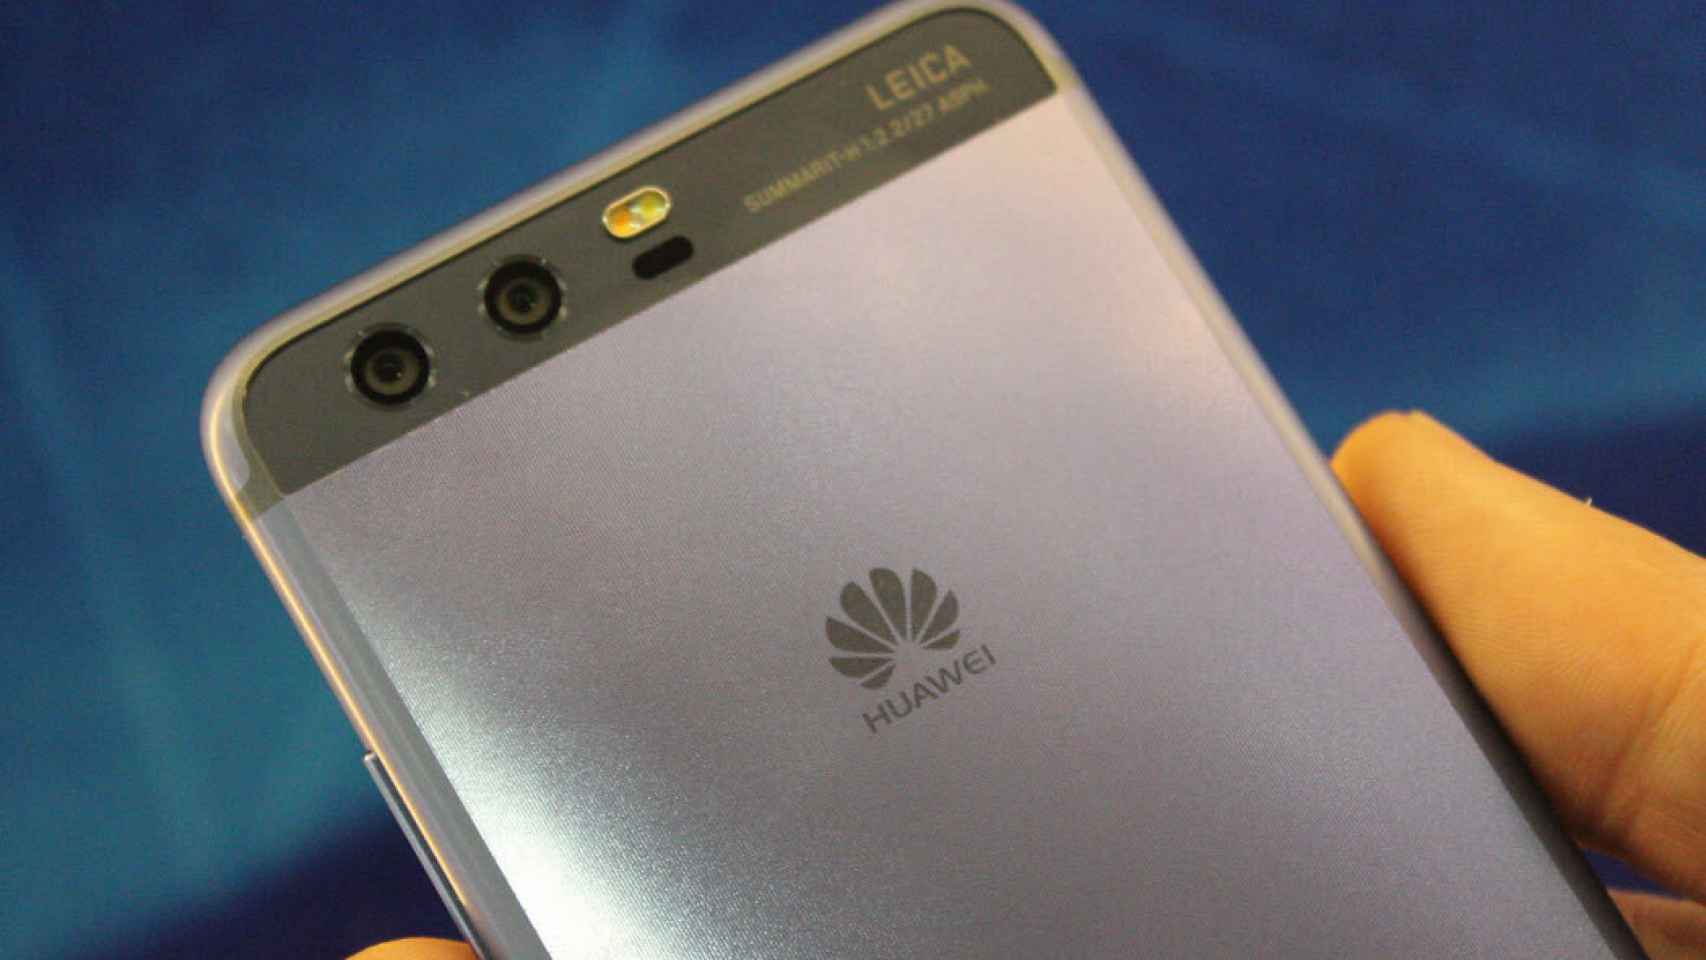 El Huawei Mate 10 promete unas características espectaculares